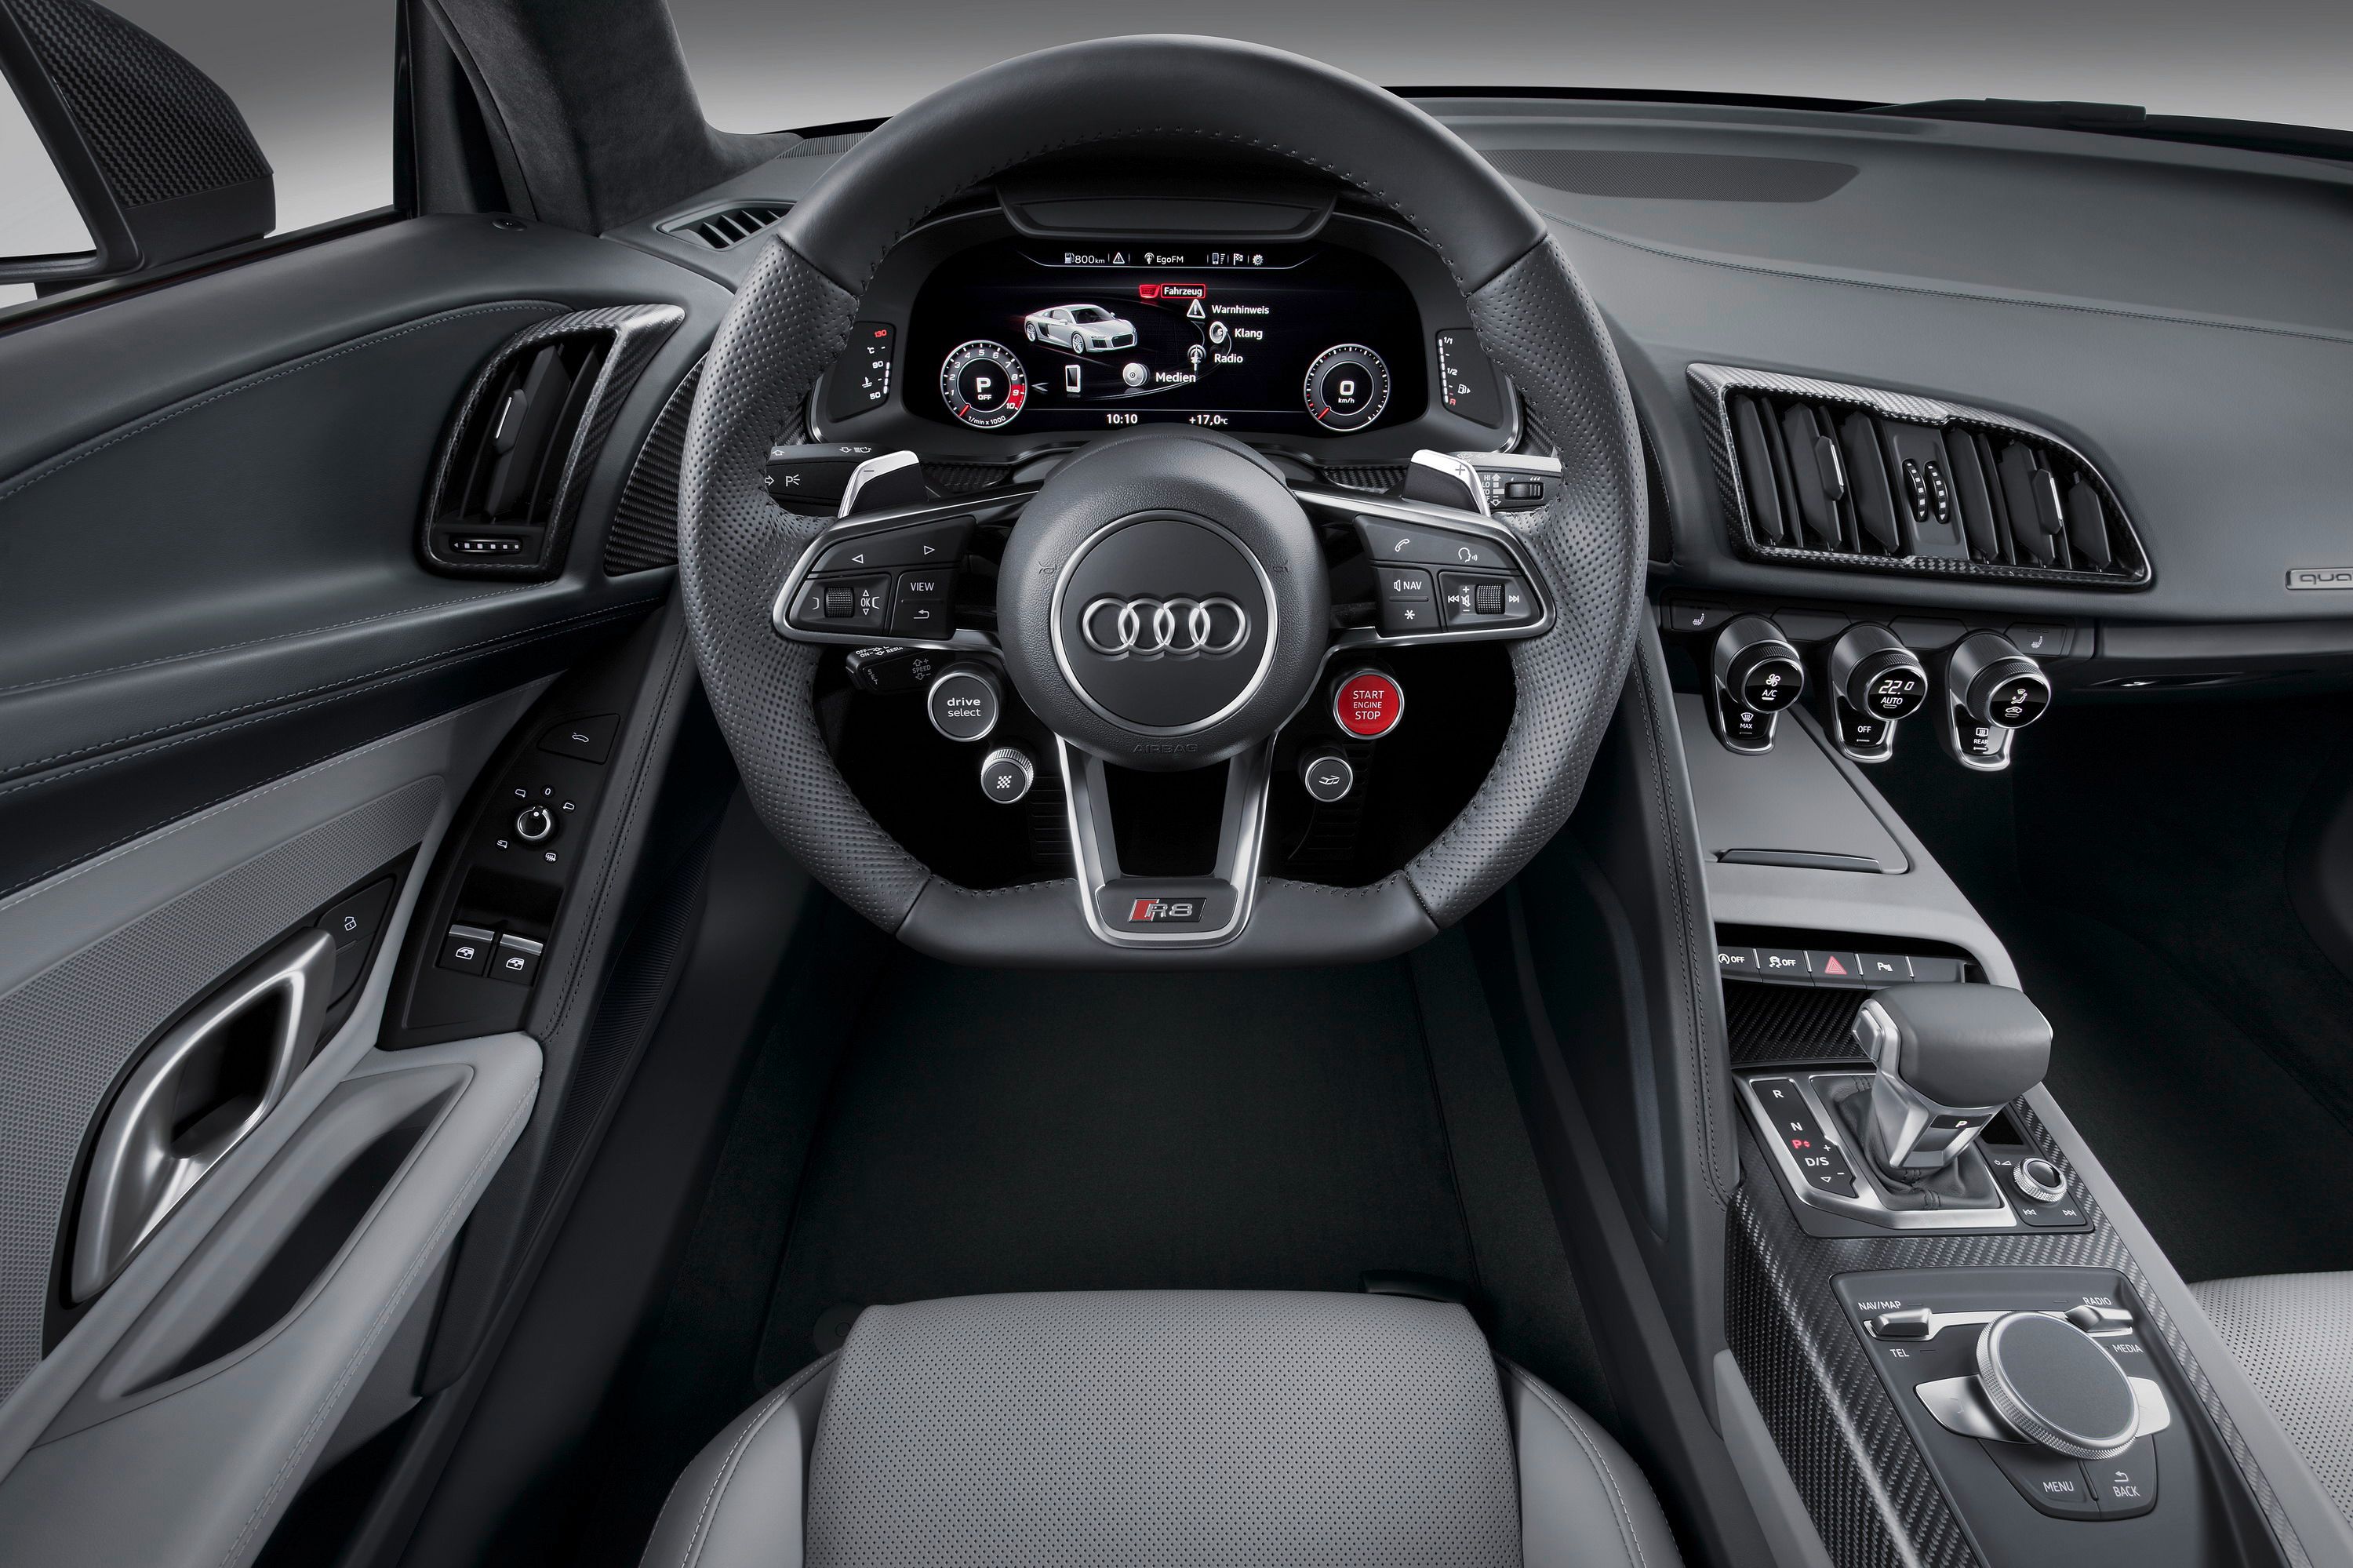 2017 - 2018 Audi R8